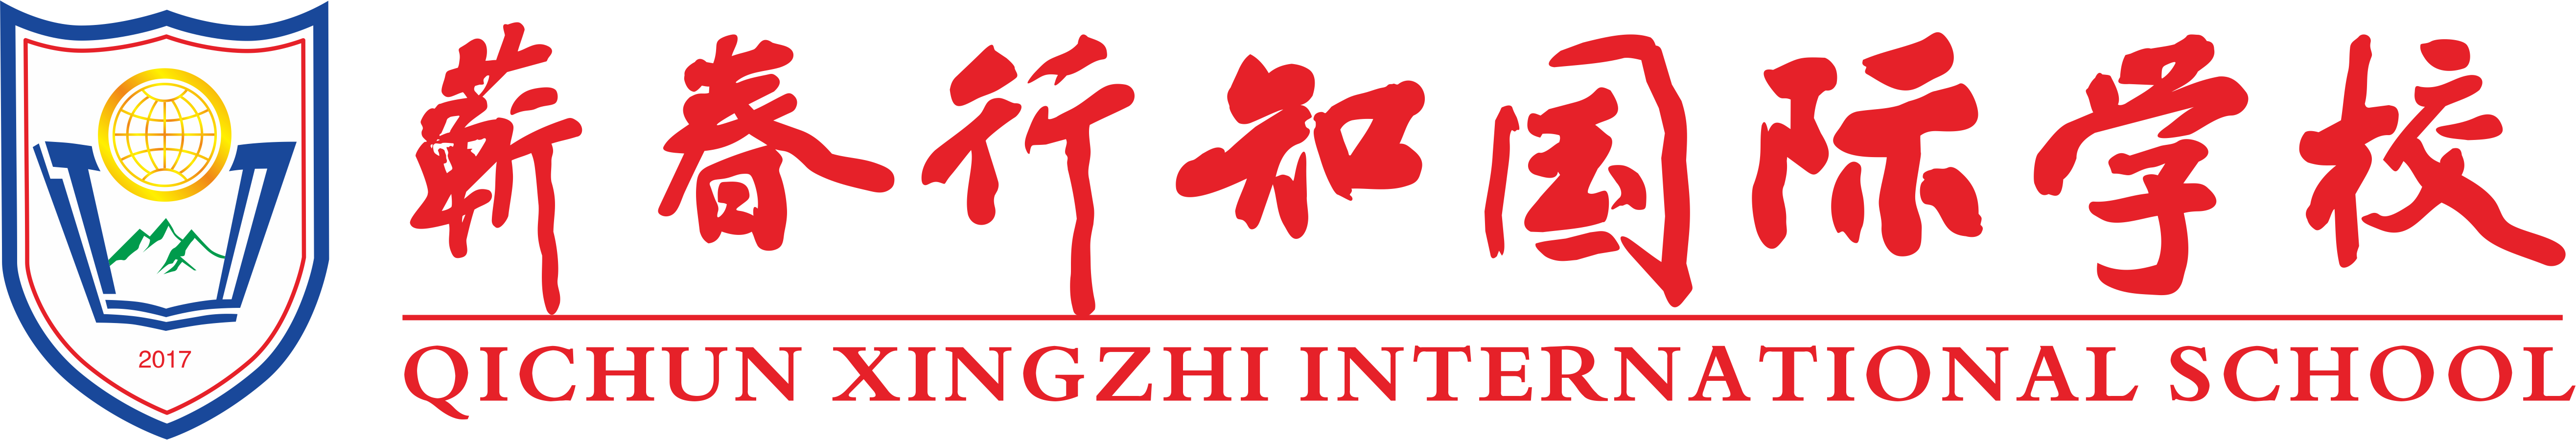 行知国际学校-logo(调整)2.png